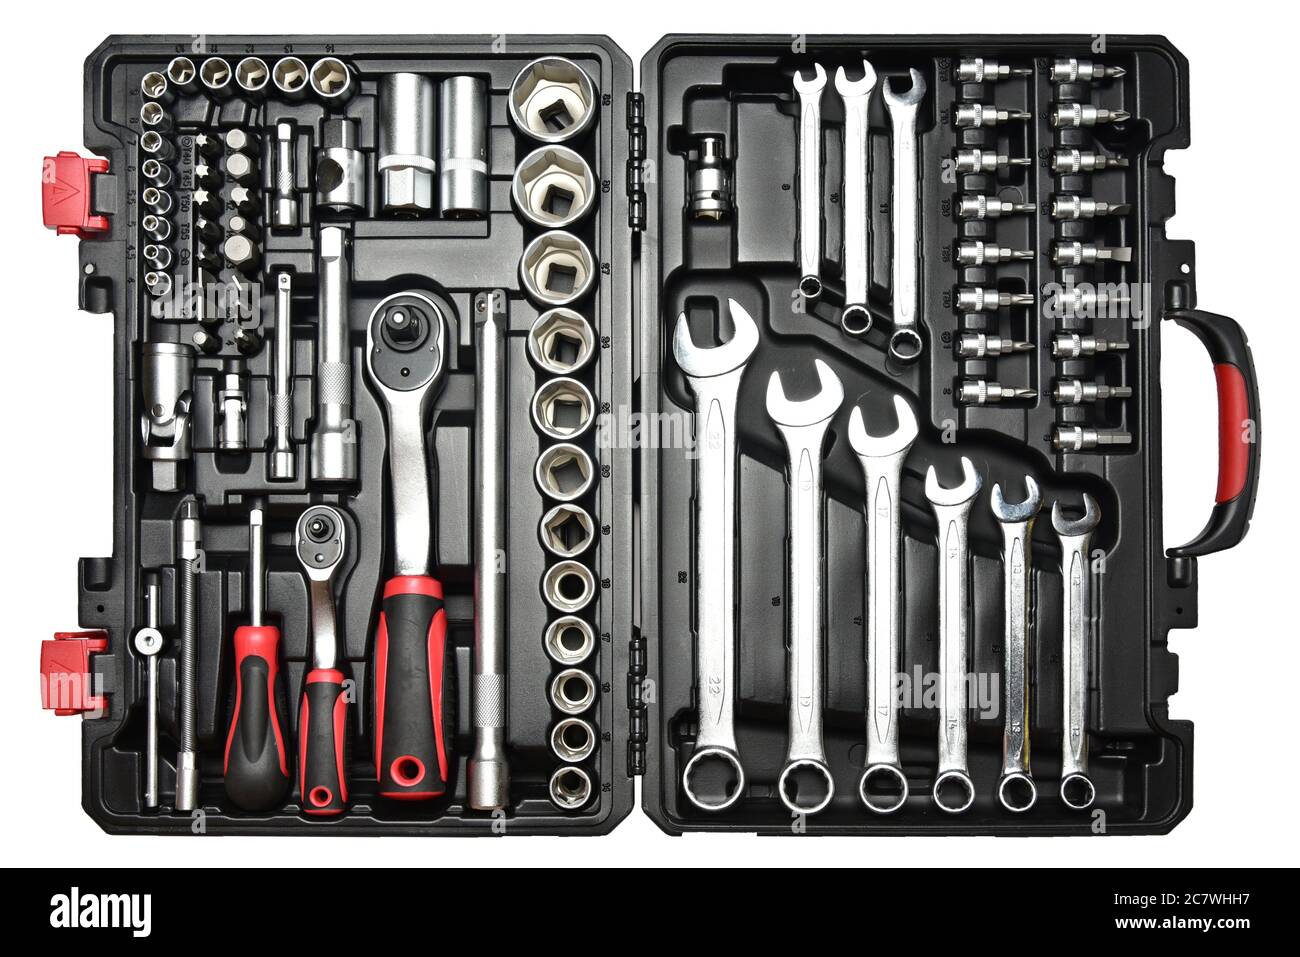 https://c8.alamy.com/compfr/2c7whh7/jeu-de-cles-a-outils-outils-mecaniques-pour-voitures-dans-le-coffret-de-kit-de-reparation-avec-poignee-a-cliquet-et-douilles-2c7whh7.jpg